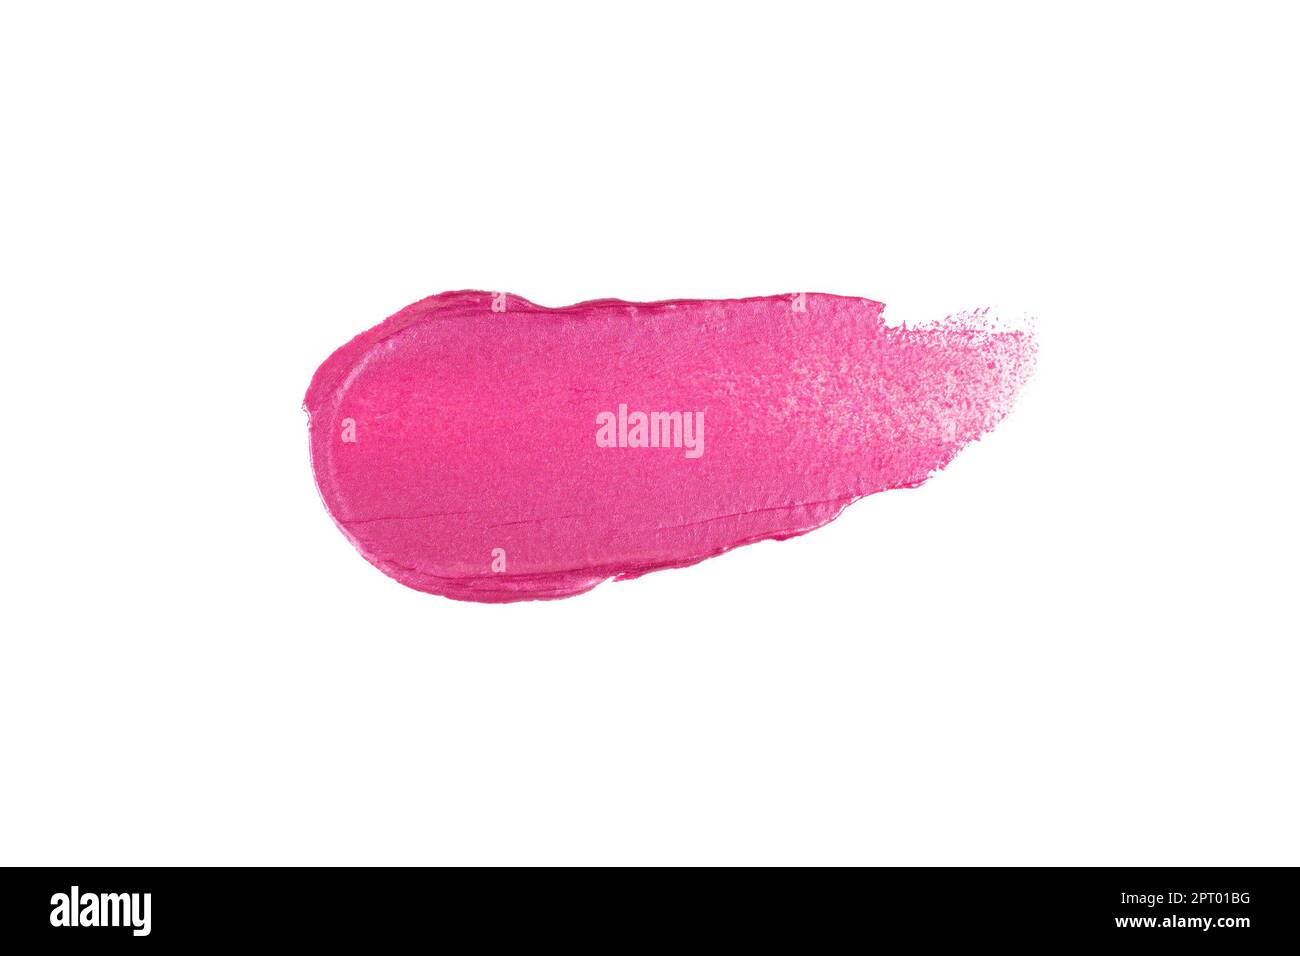 Lippenstift in leuchtendem Rosa oder Lipgloss mit schimmerndem Farbmuster glatter Abstrich. Kosmetikschmierprobe für das Design von Make-up-Produkten. Stockfoto